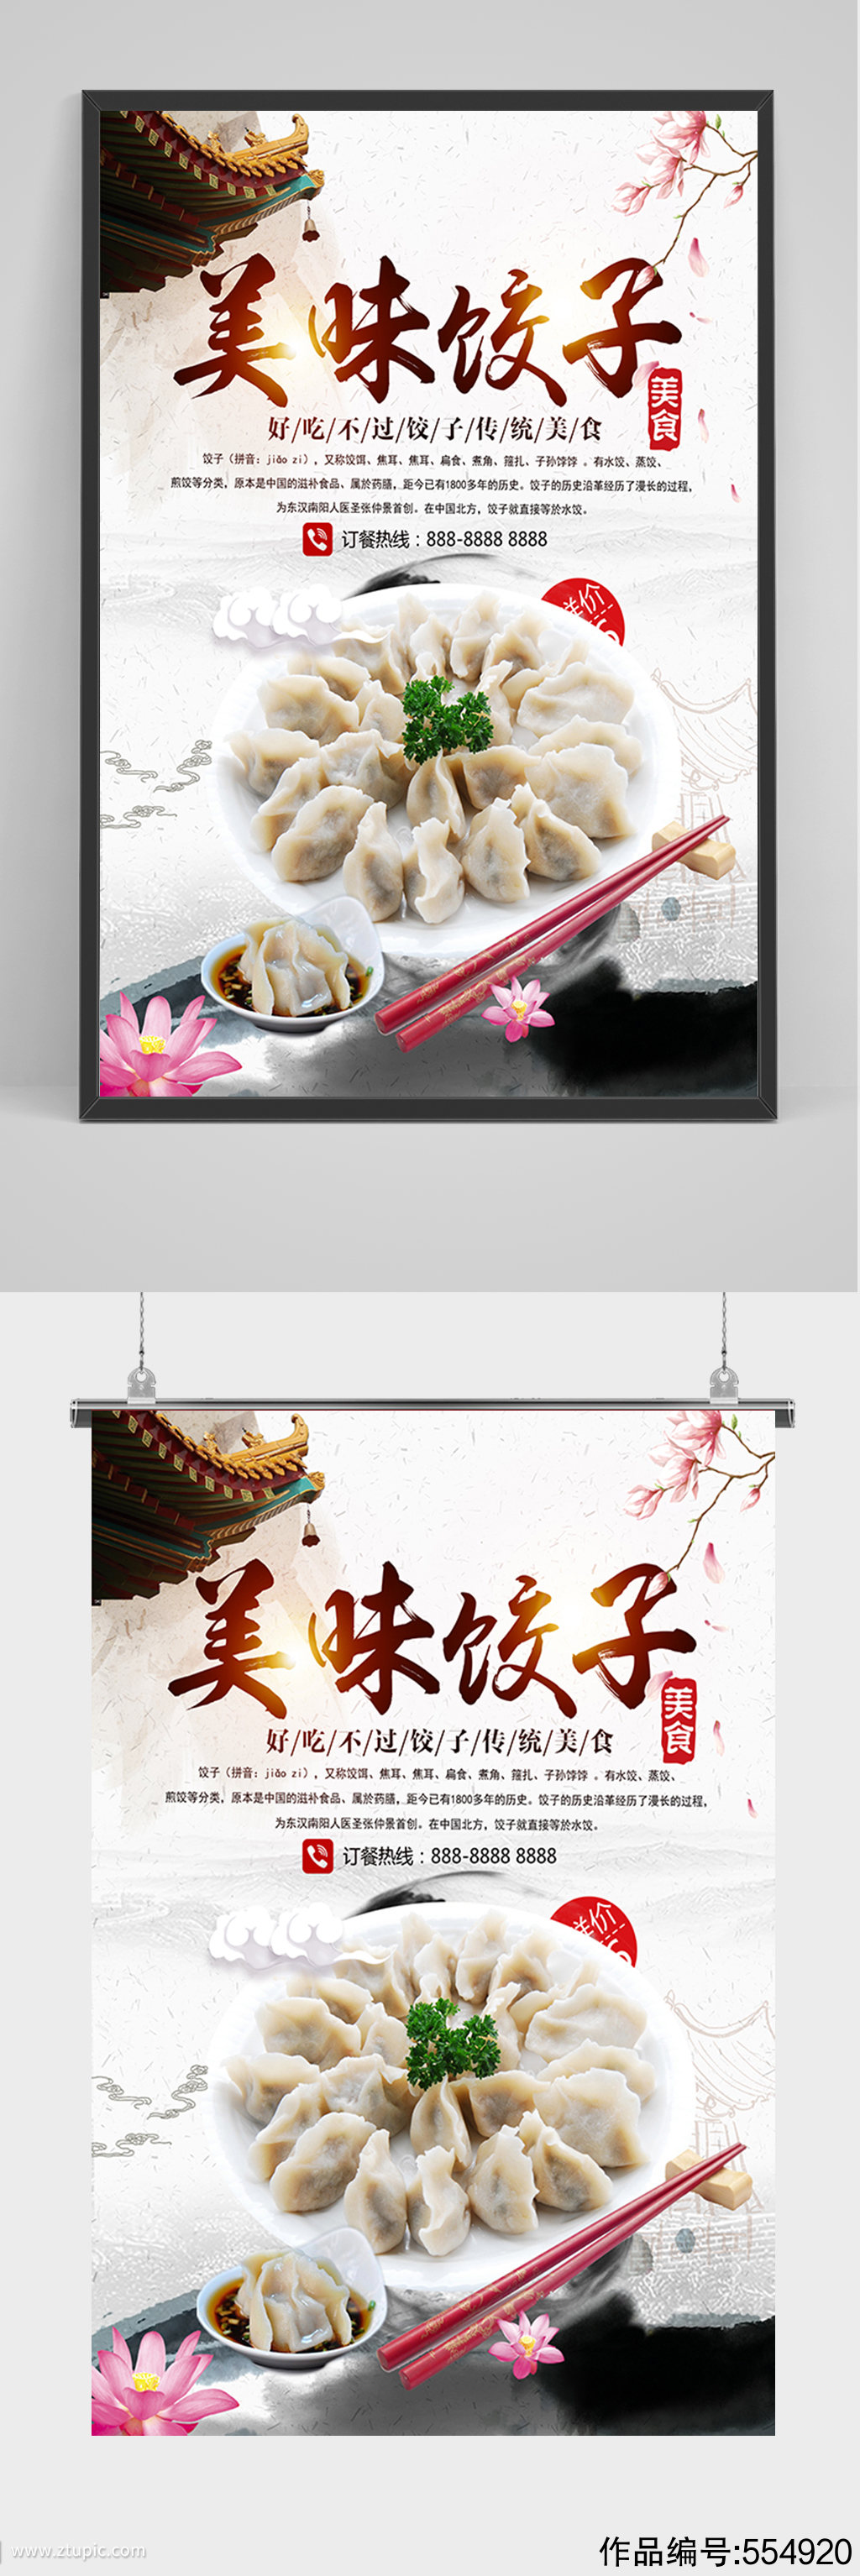 美食美味饺子海报